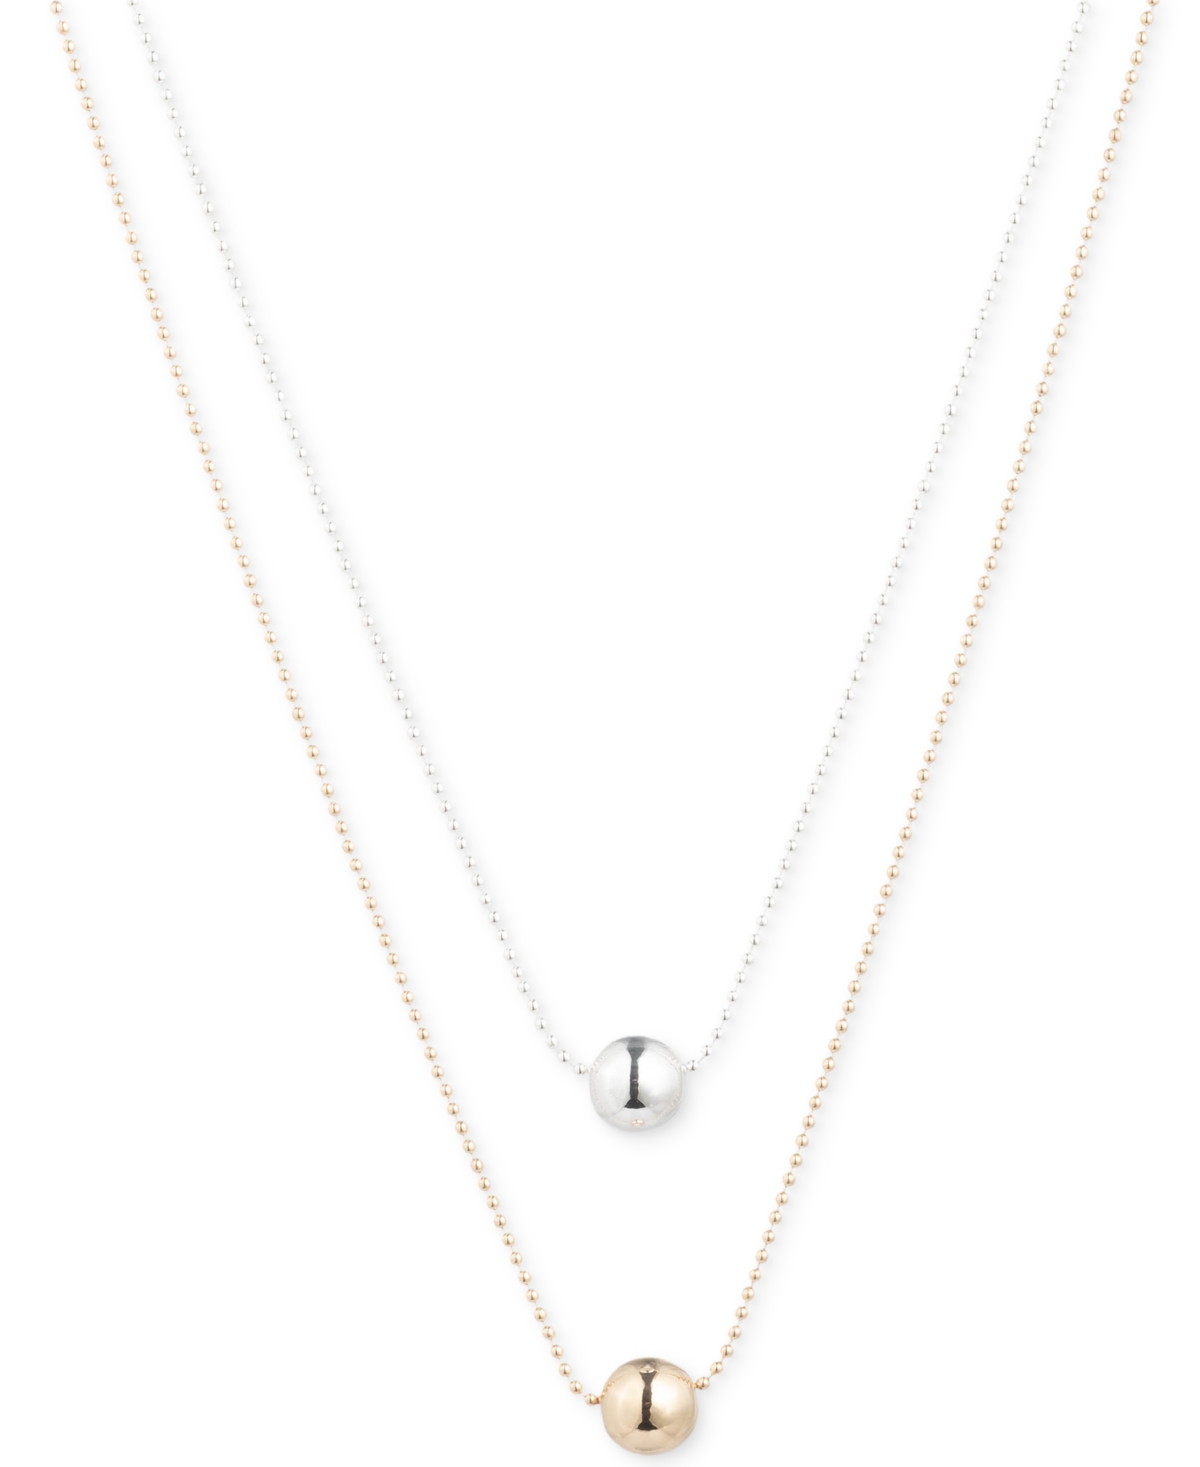 Lauren Ralph Lauren Two-tone Two-row Bead Pendant Necklace, 17" + 3" Extender In Gold